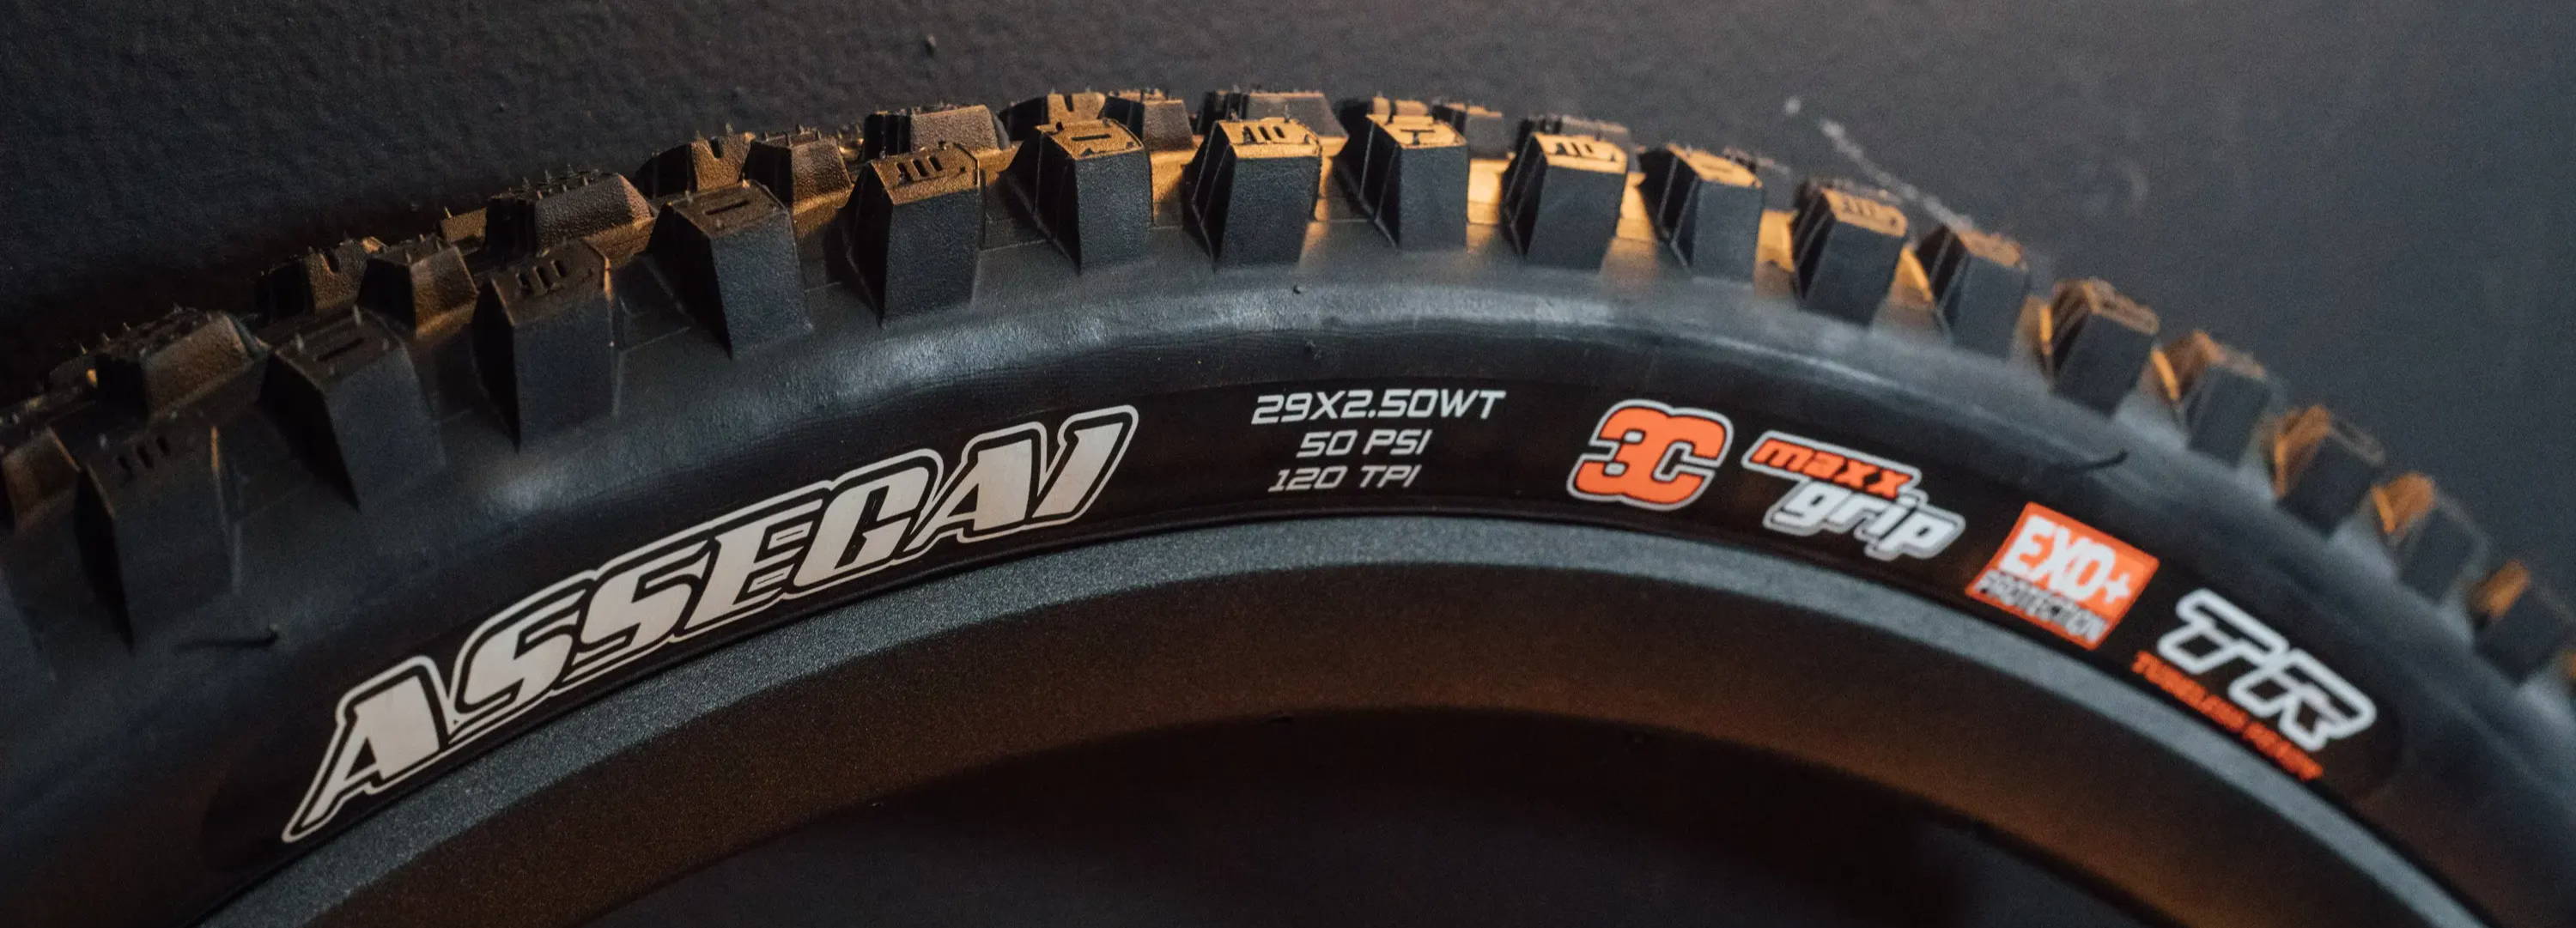 Maxxis MTB Tire Sidewalls Explained